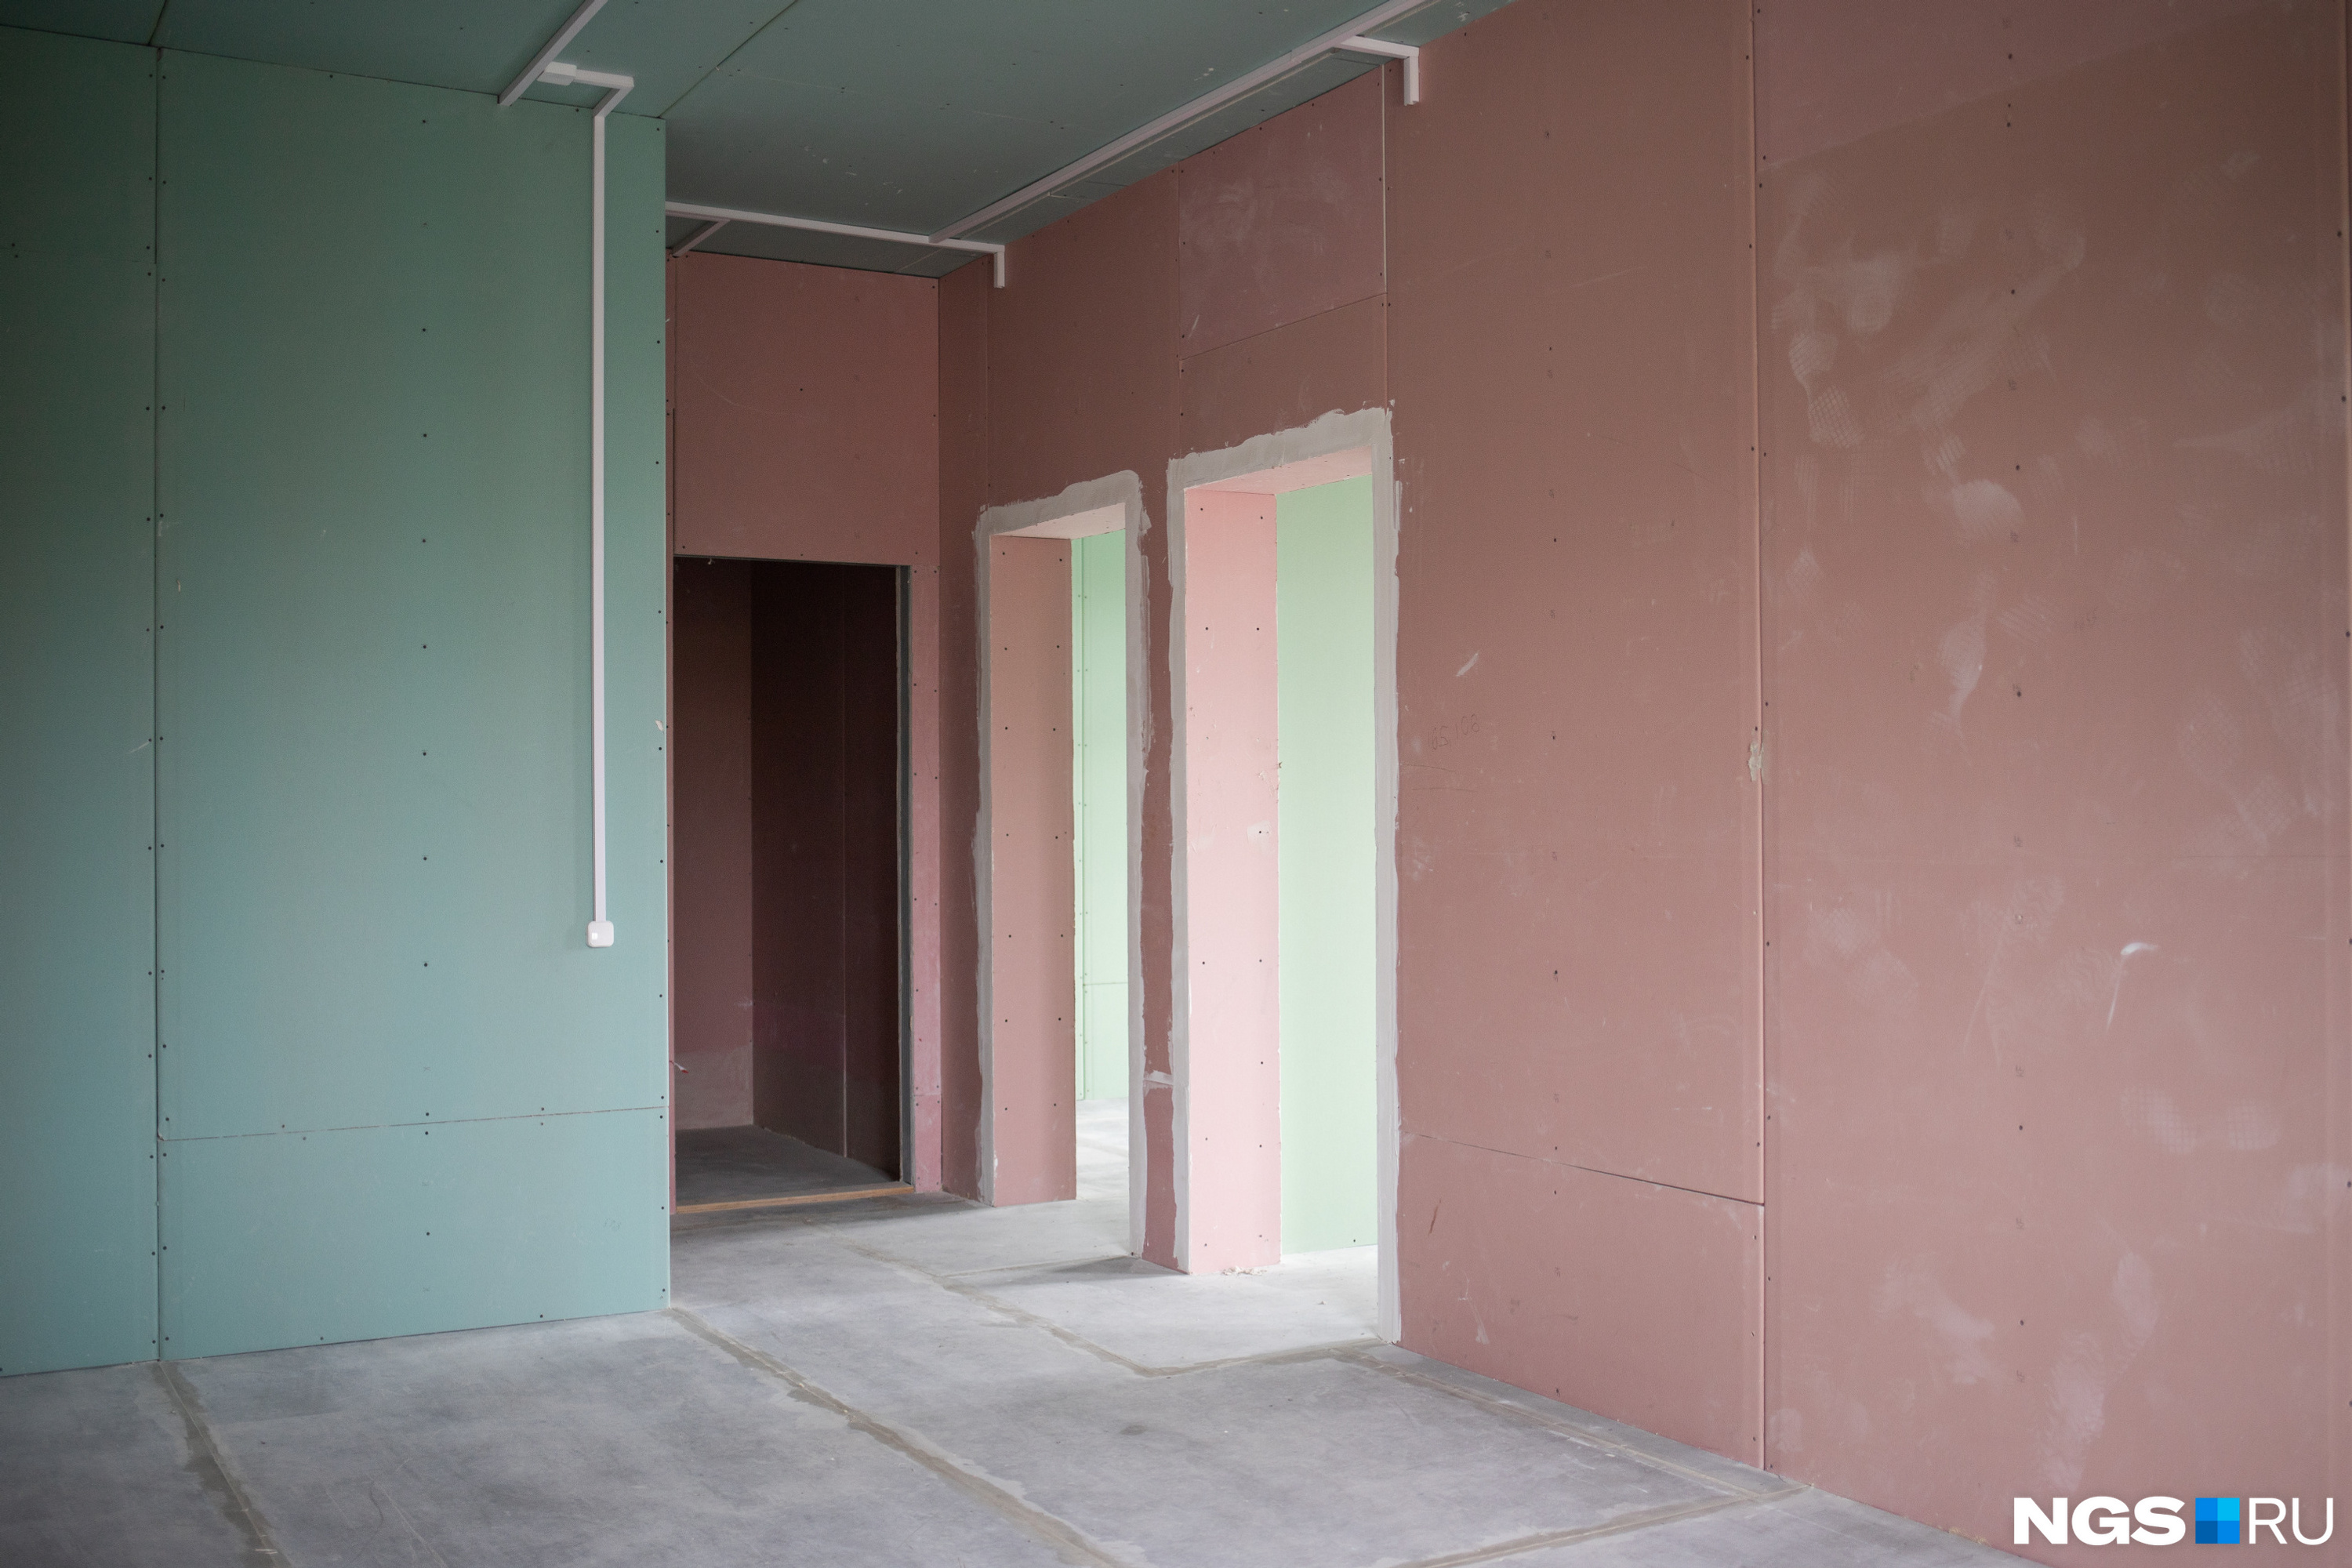 Квартиры фактически подготовлены для чистовой отделки: одна из составляющих стен — гипсокартон